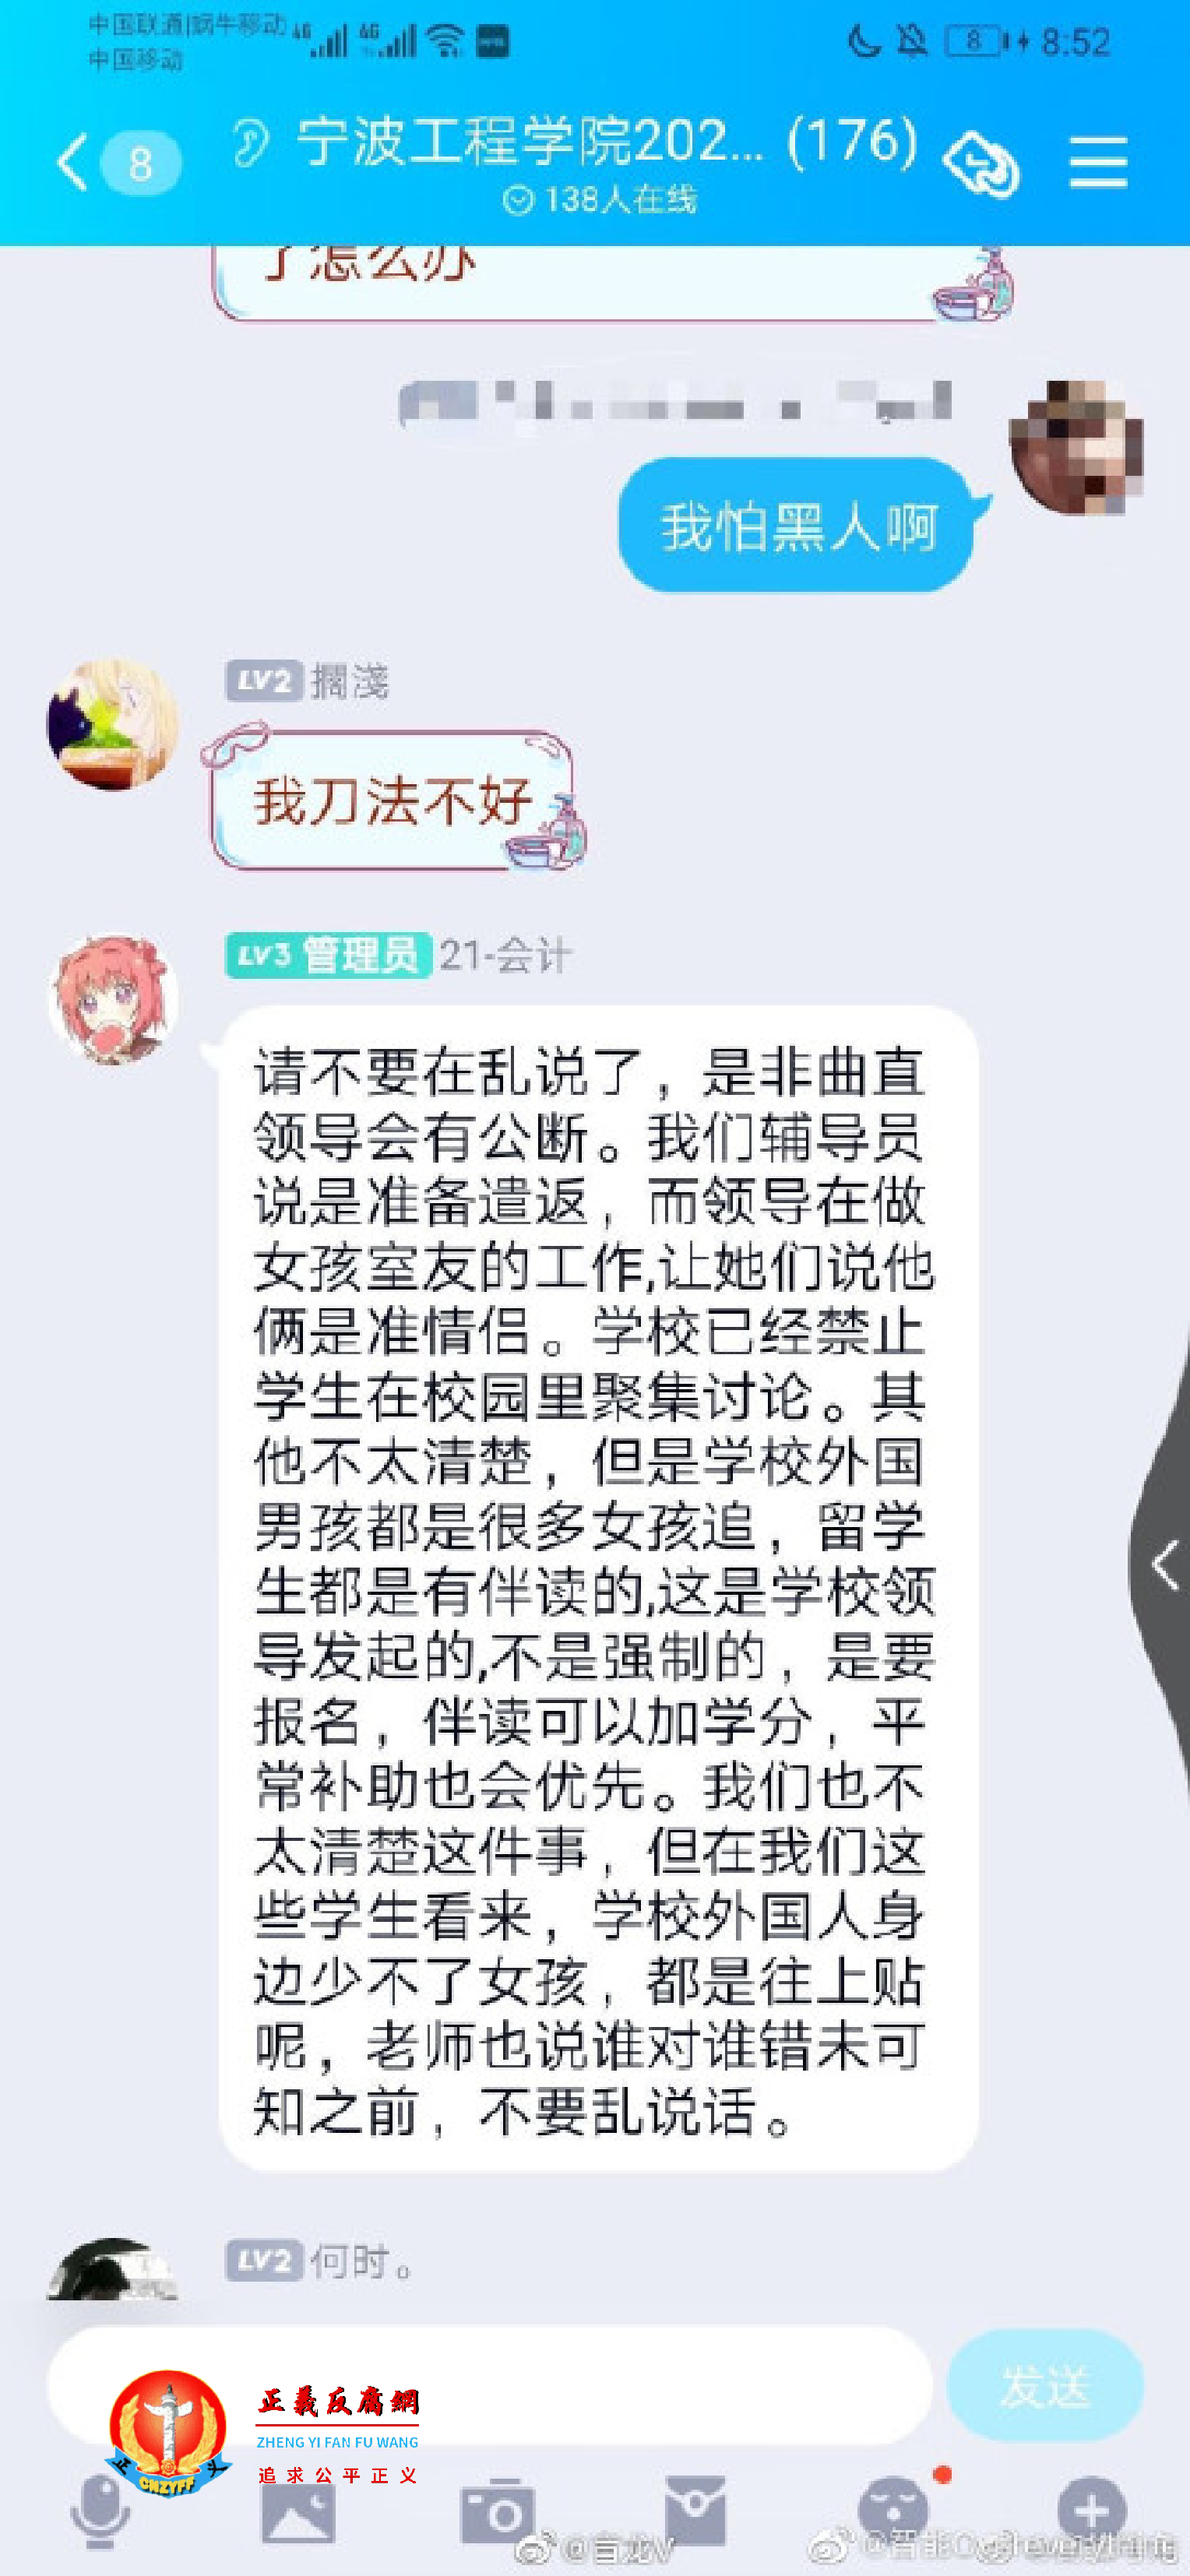 QQ群聊记录上有关宁波工程学院血案.png